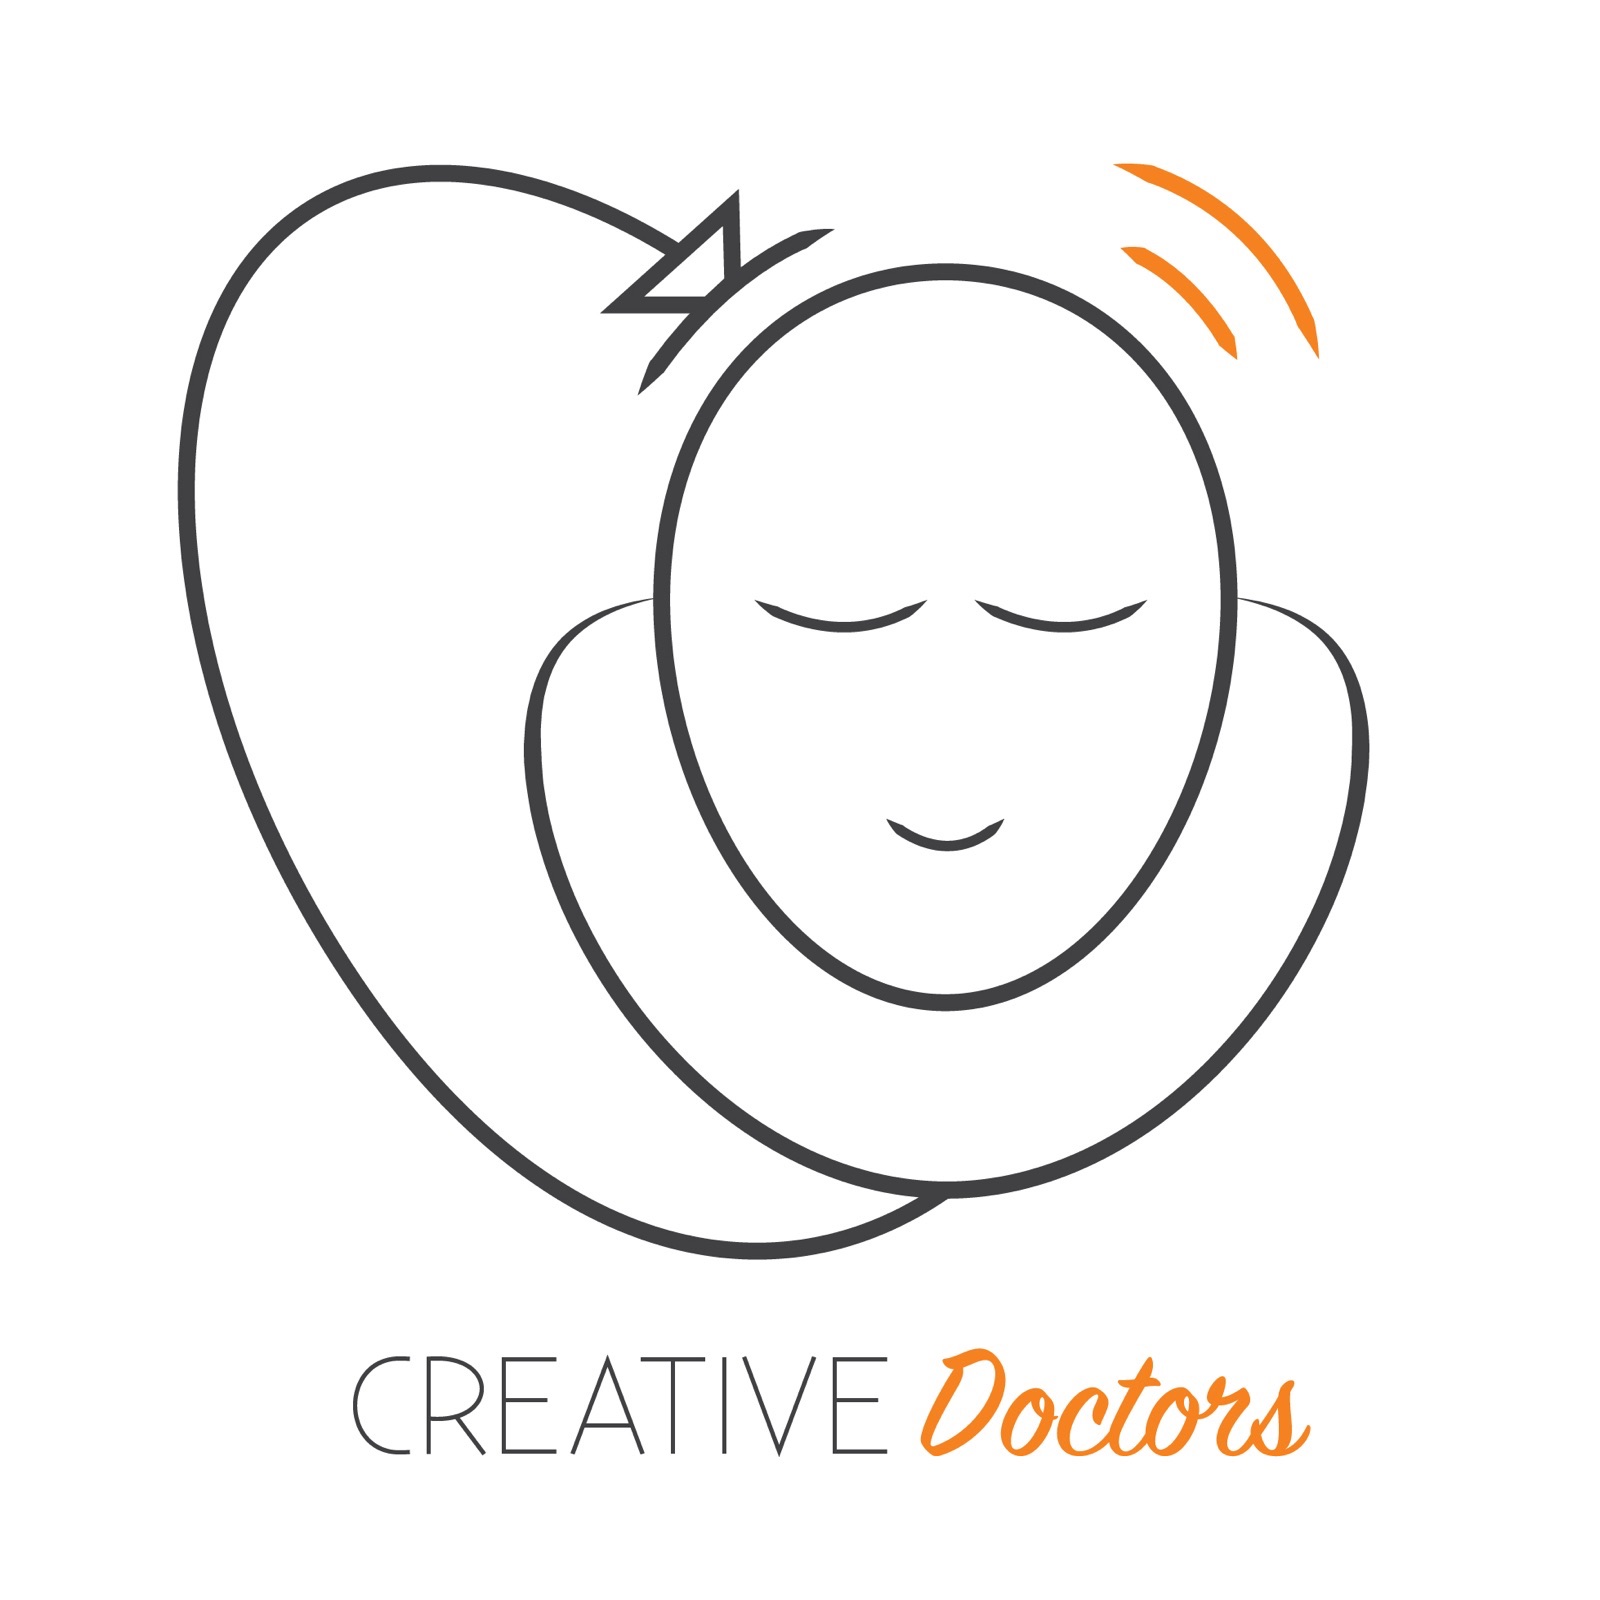 Creative Doctors